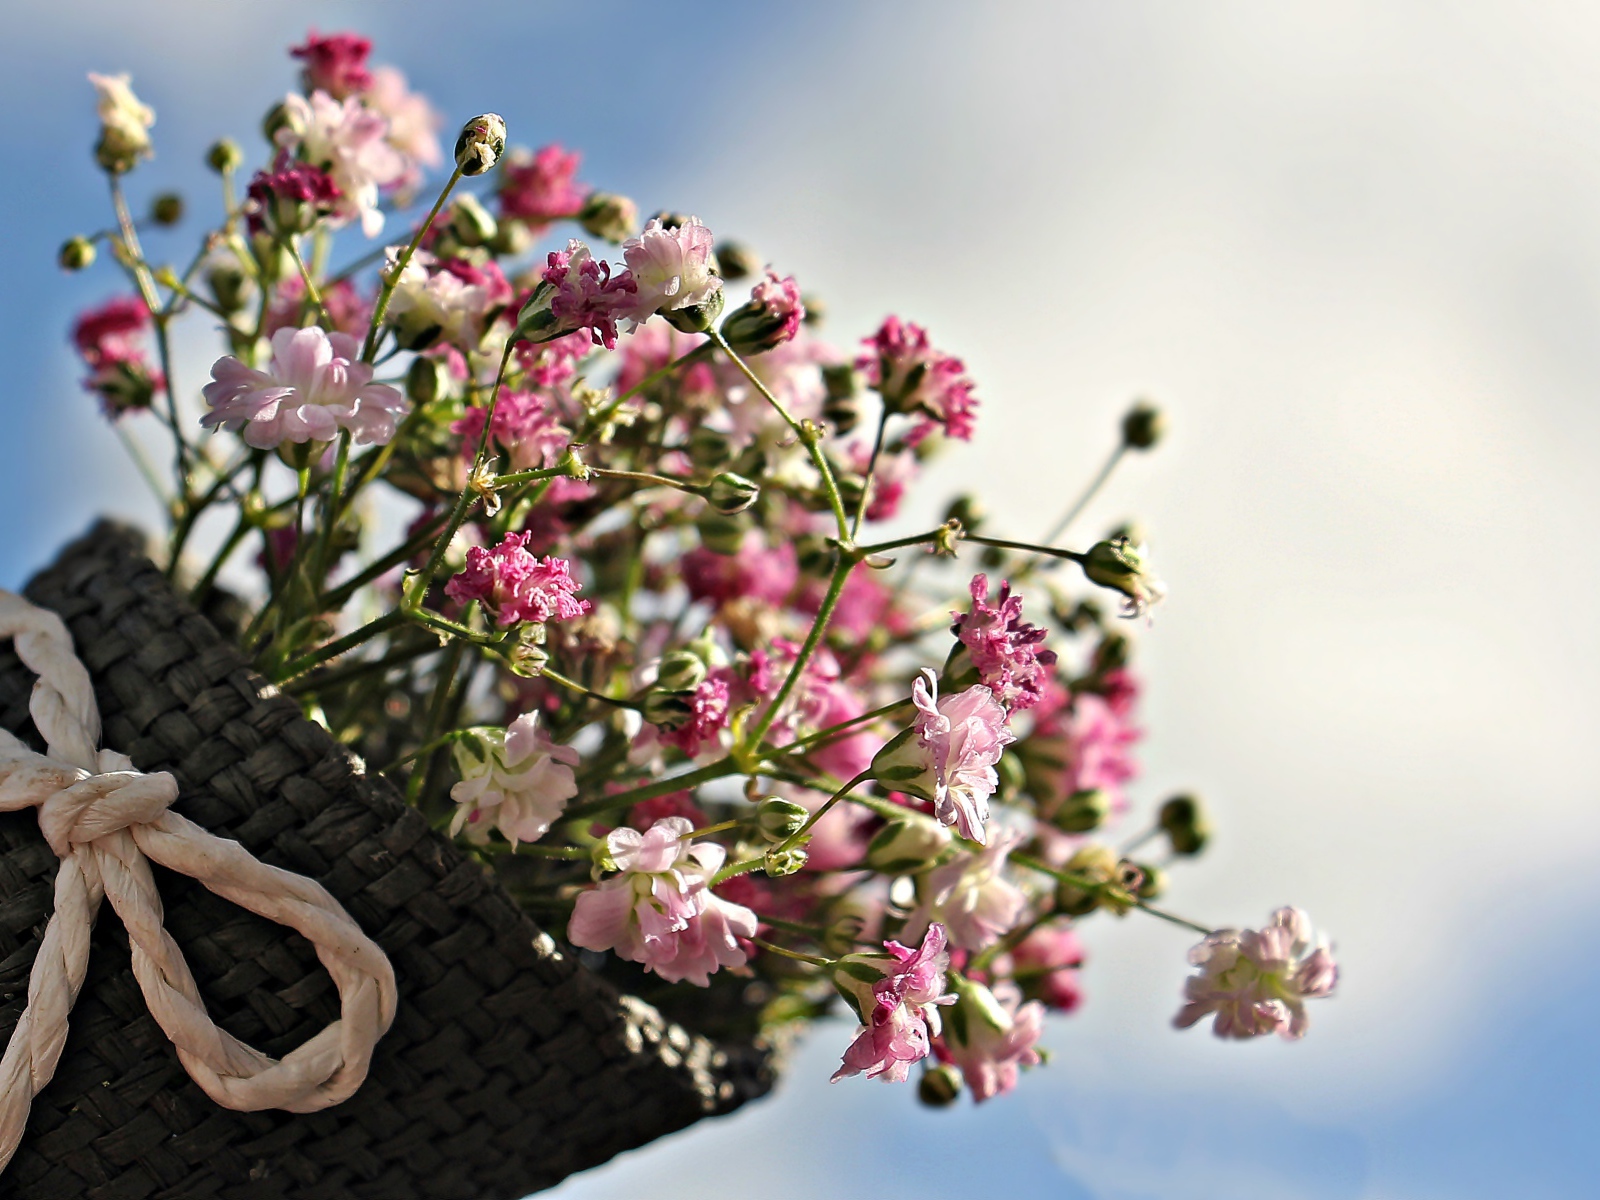 Букет розовых цветов в корзине на фоне голубого неба